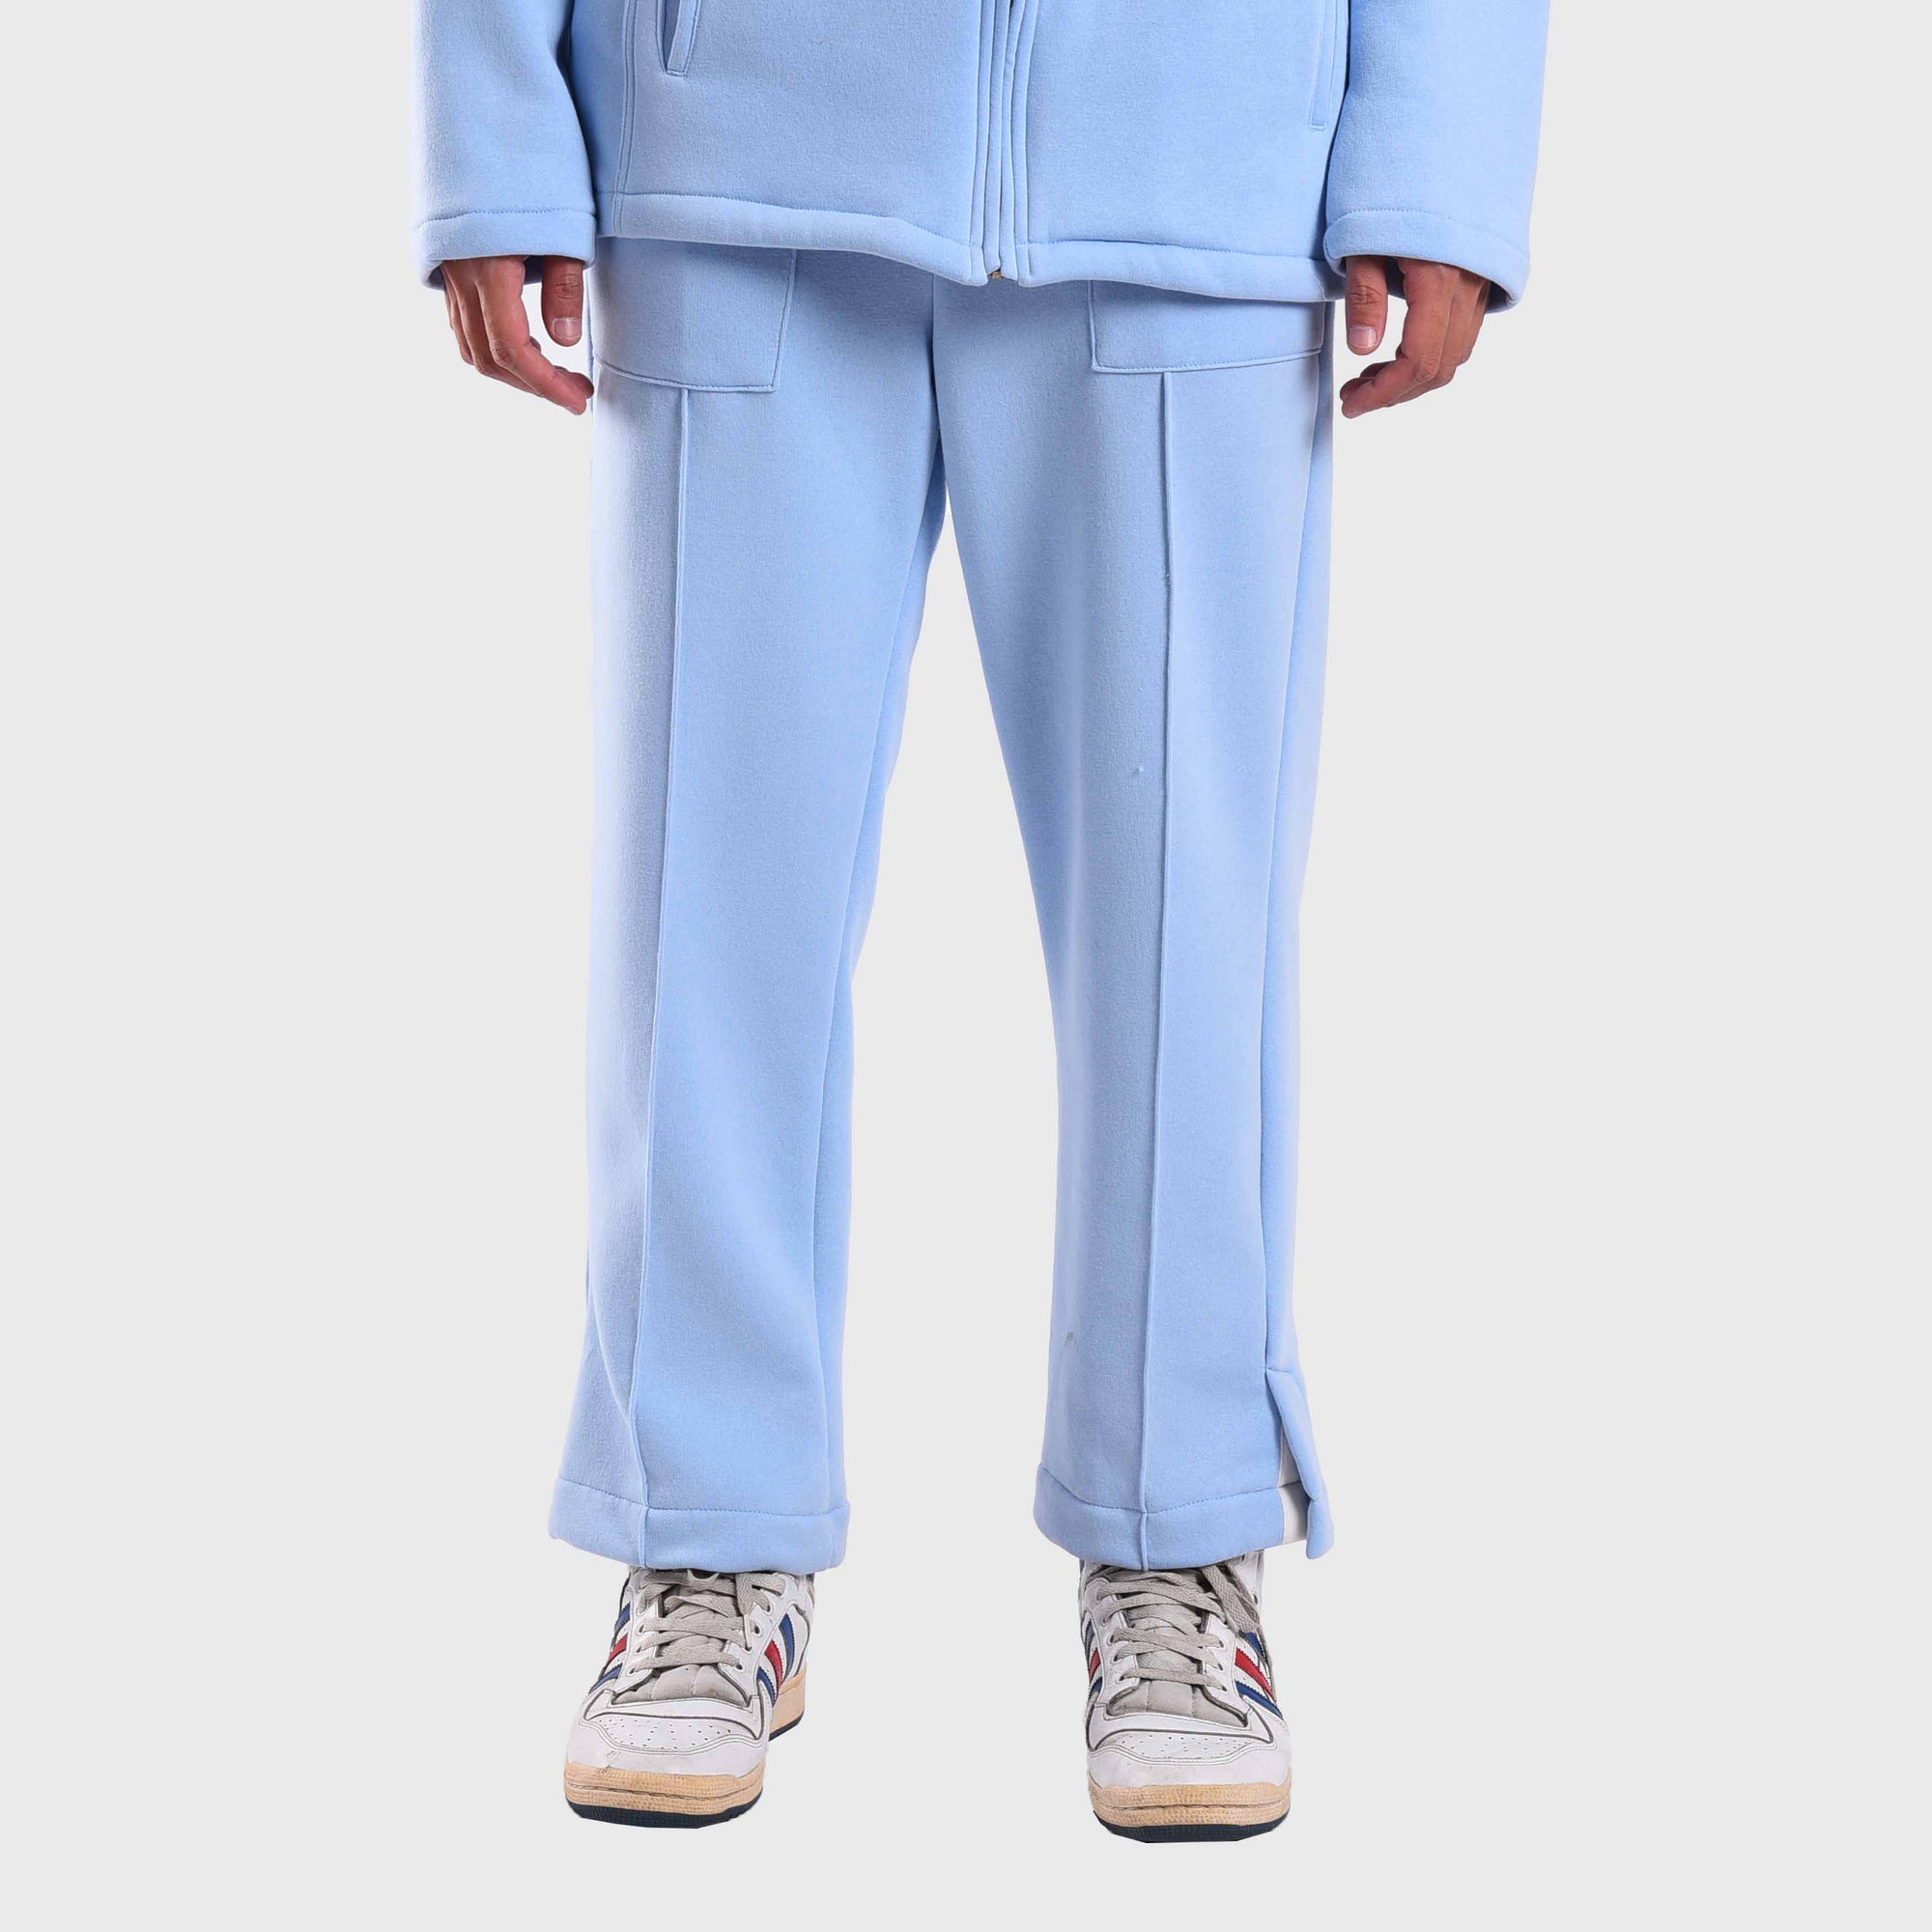 Roughneck C020 Allure Blue Port Au Prince Sweat Pants